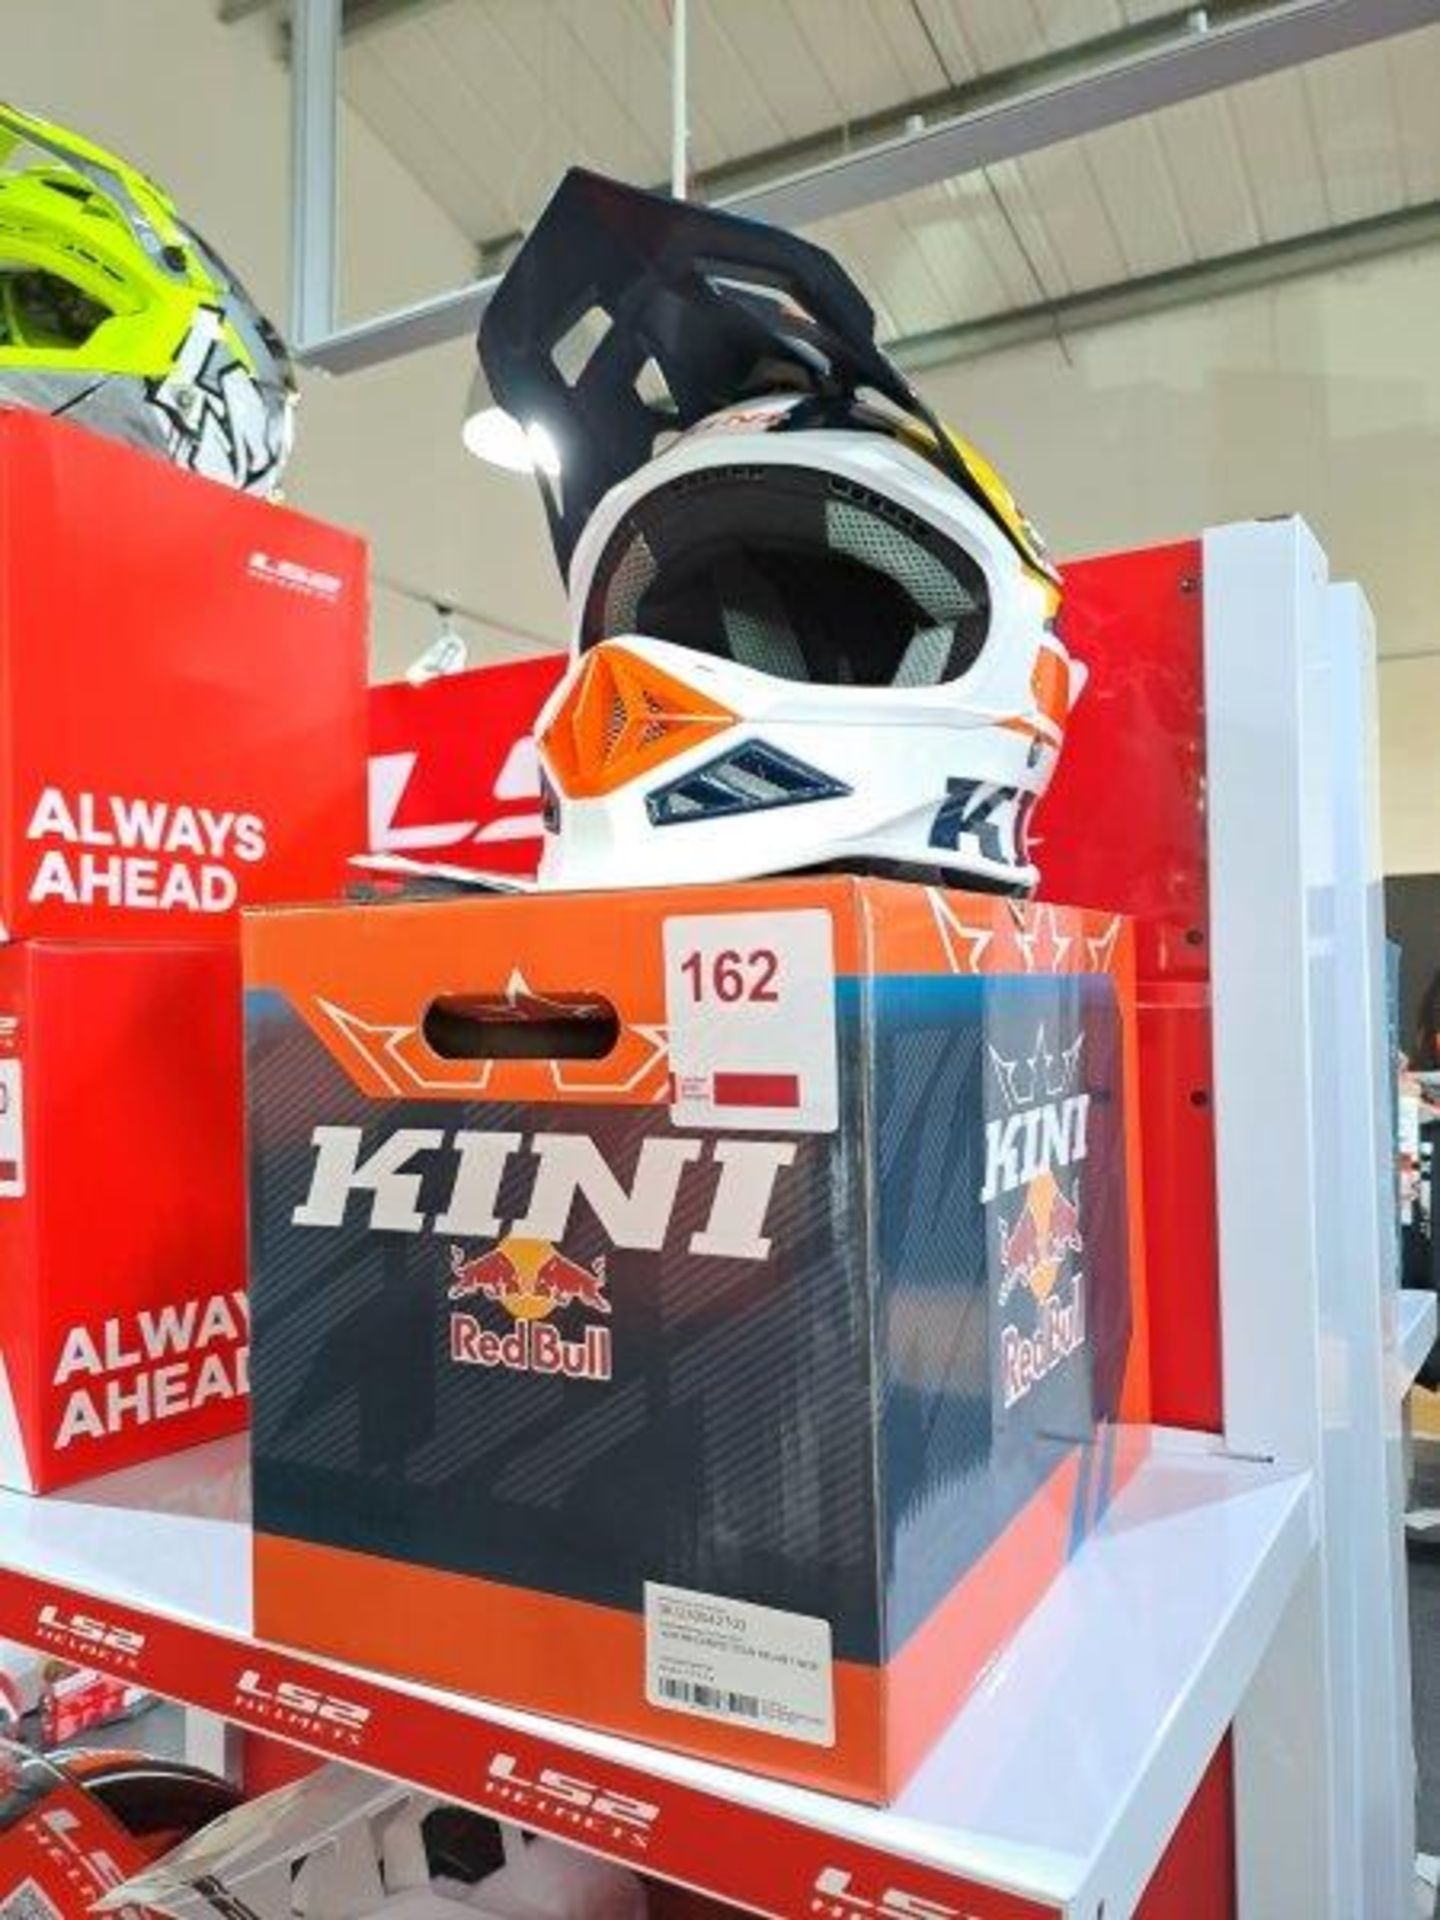 Kini-RedBull KINI-RB Competition M-58 Motorbike Helmet - Image 5 of 7